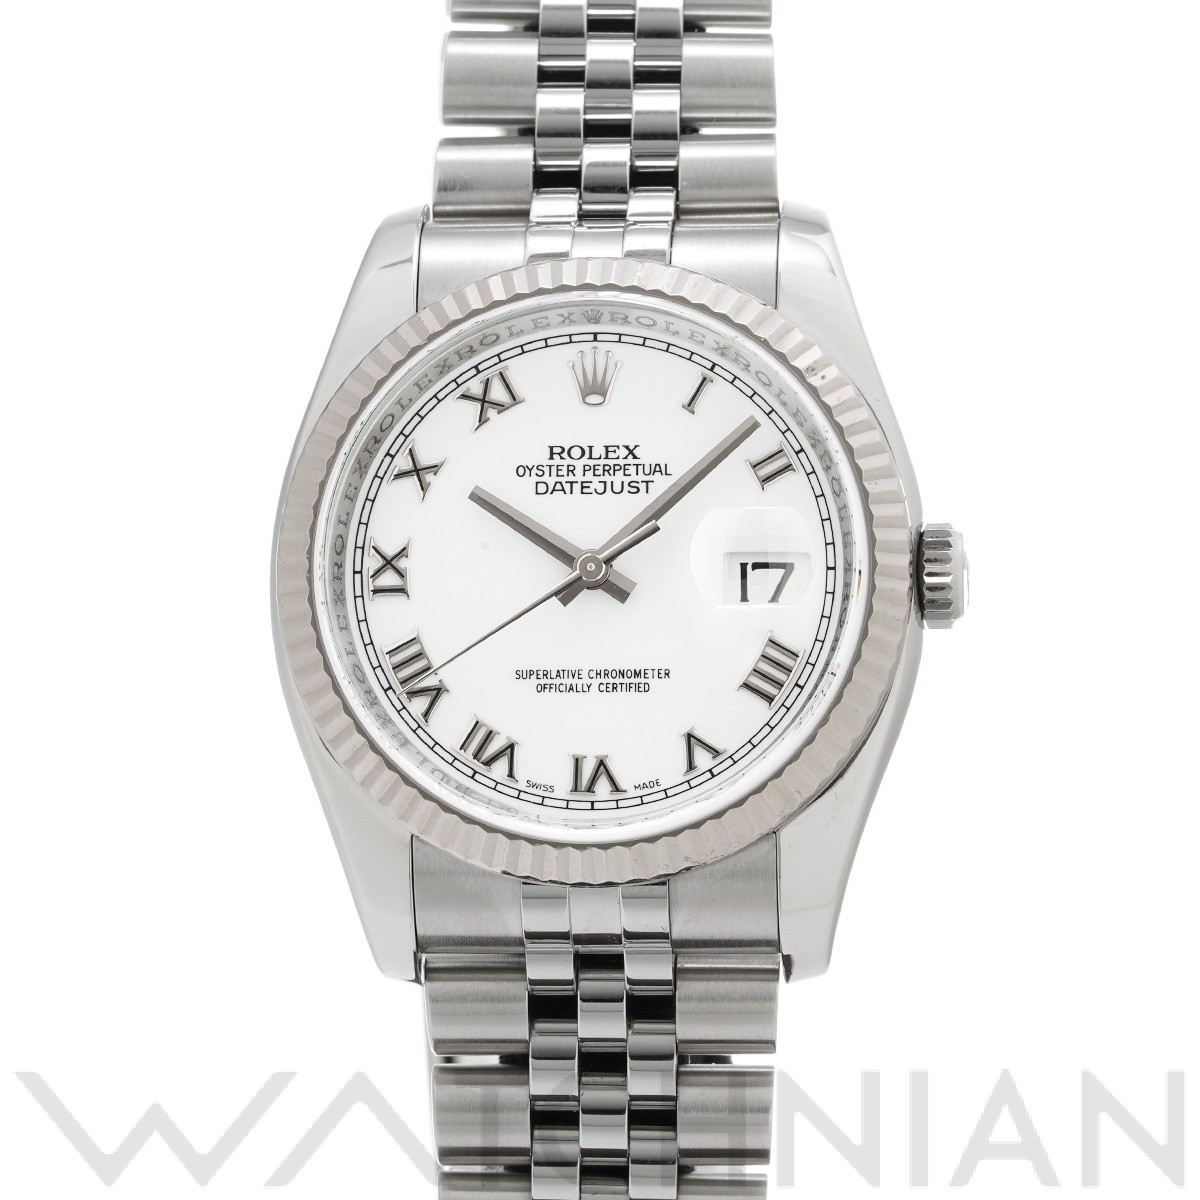 ロレックス ROLEX 116234 M番(2007年頃製造) ホワイト メンズ 腕時計